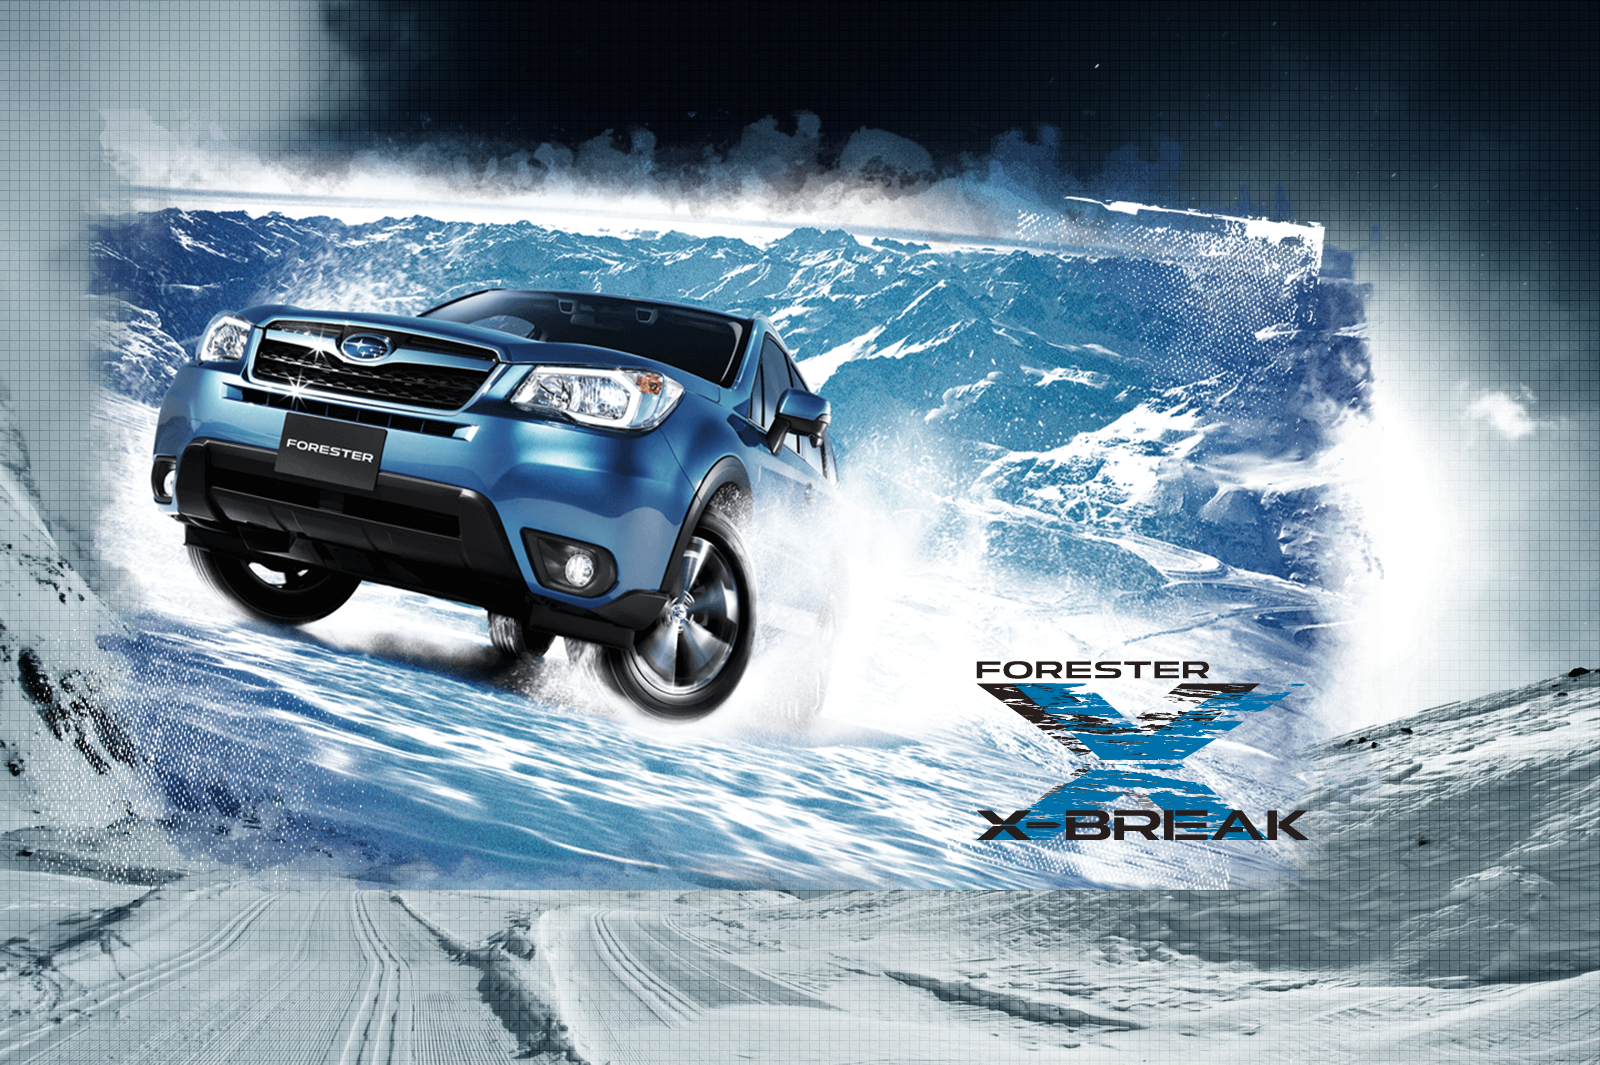 Subaru Forester X-BREAK